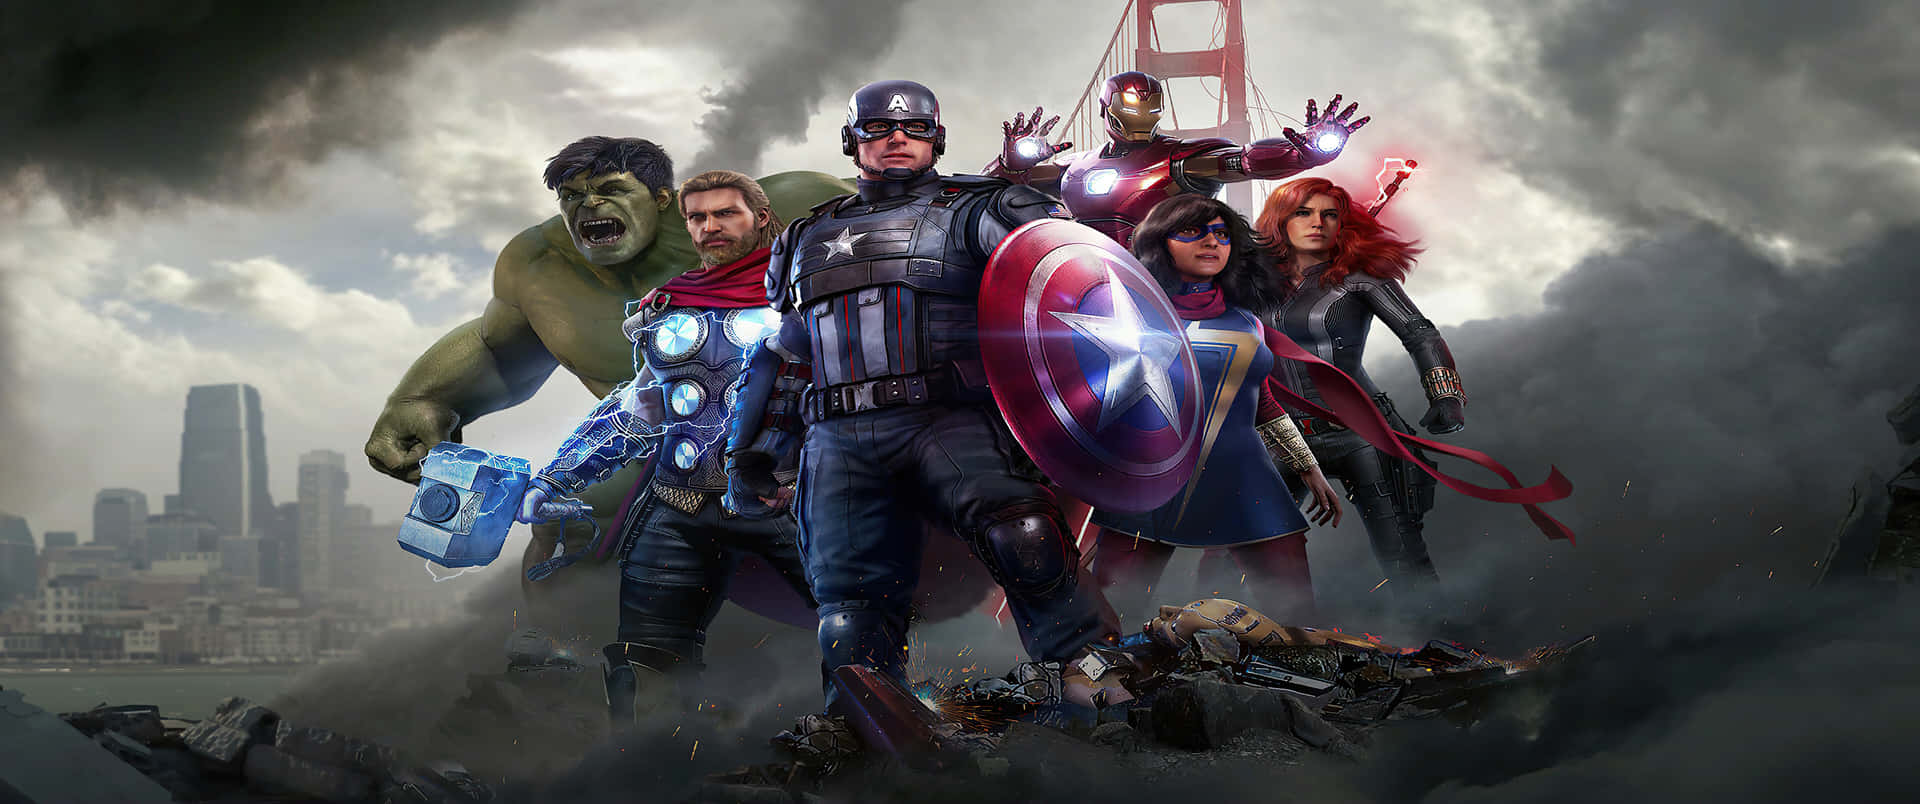 fløbAvengers Avengers Avengers Avengers Avengers Avengers Afløb Wallpaper